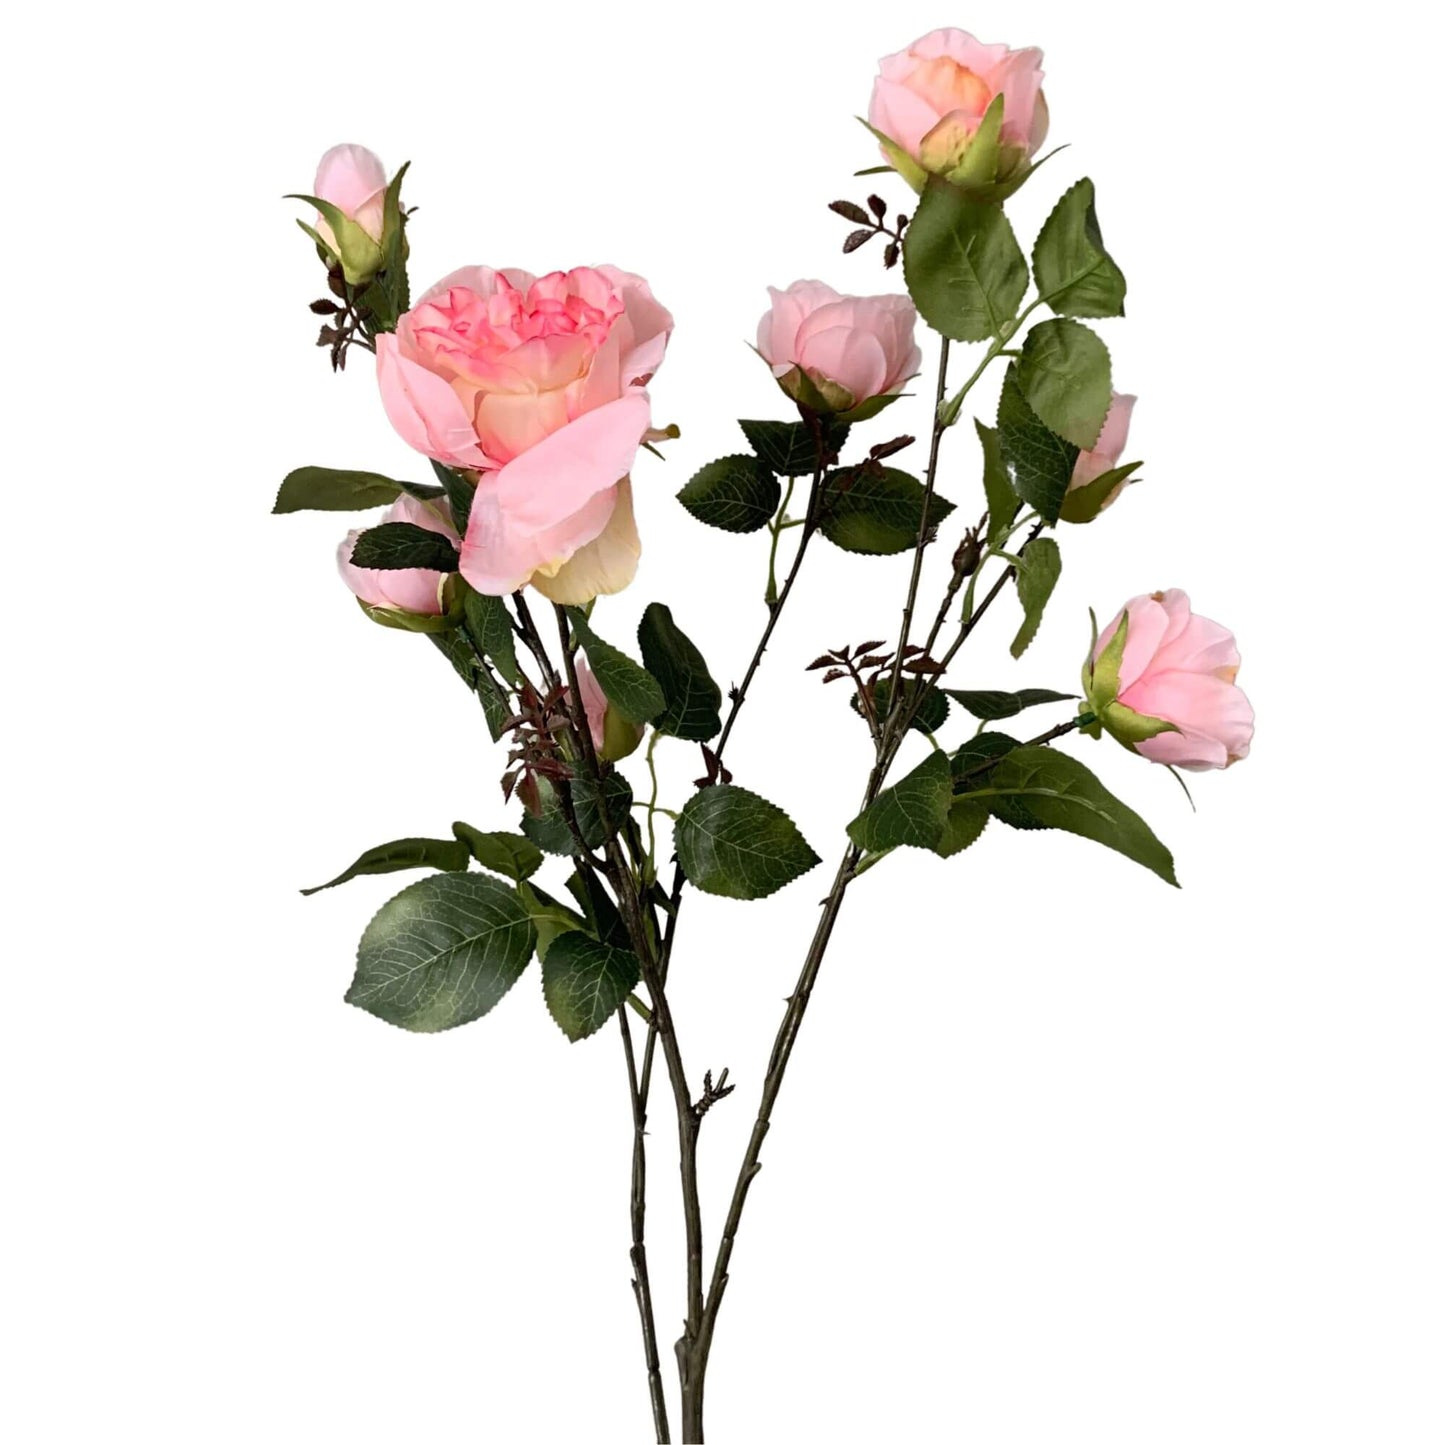 Zijden rozen tak met meerdere roze rozen